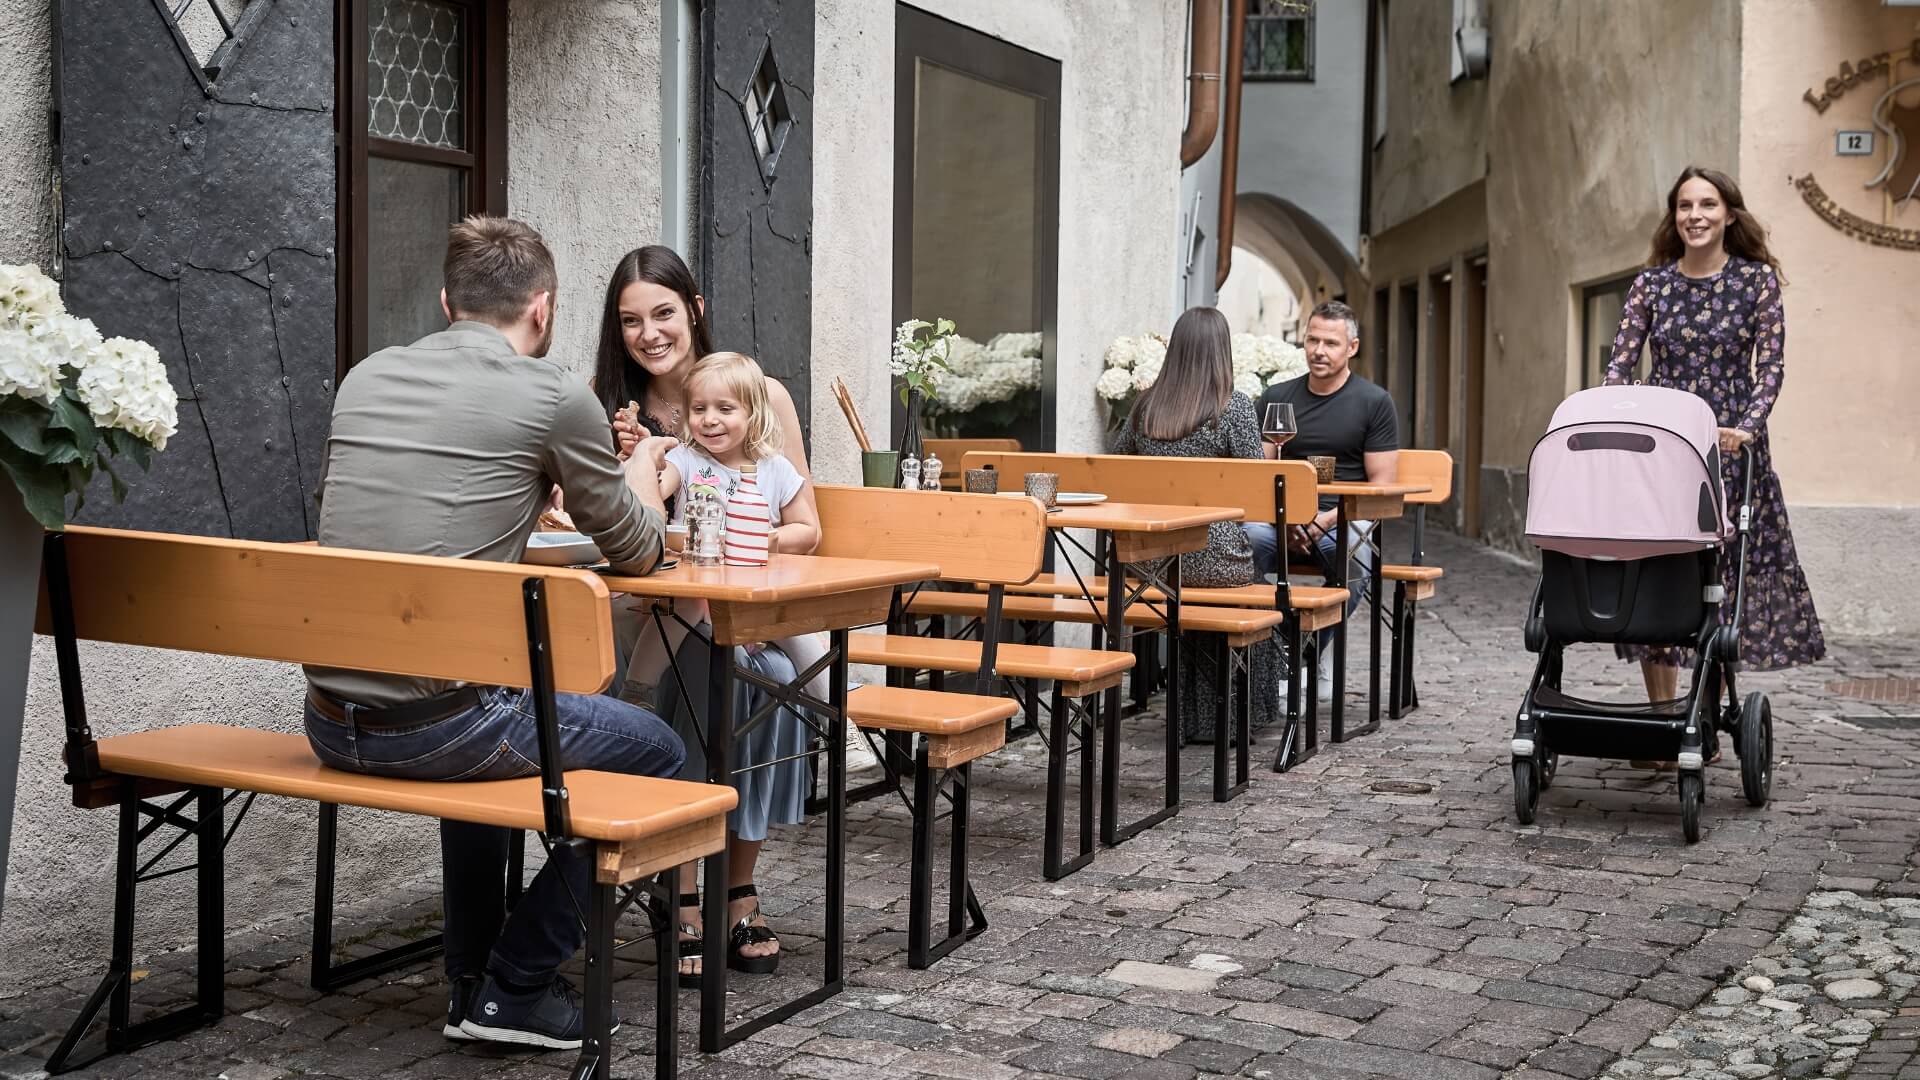 Mehrere Personen sitzen auf kleinen Bierzeltgarnituren in einer Gasse bei einem Restaurant.